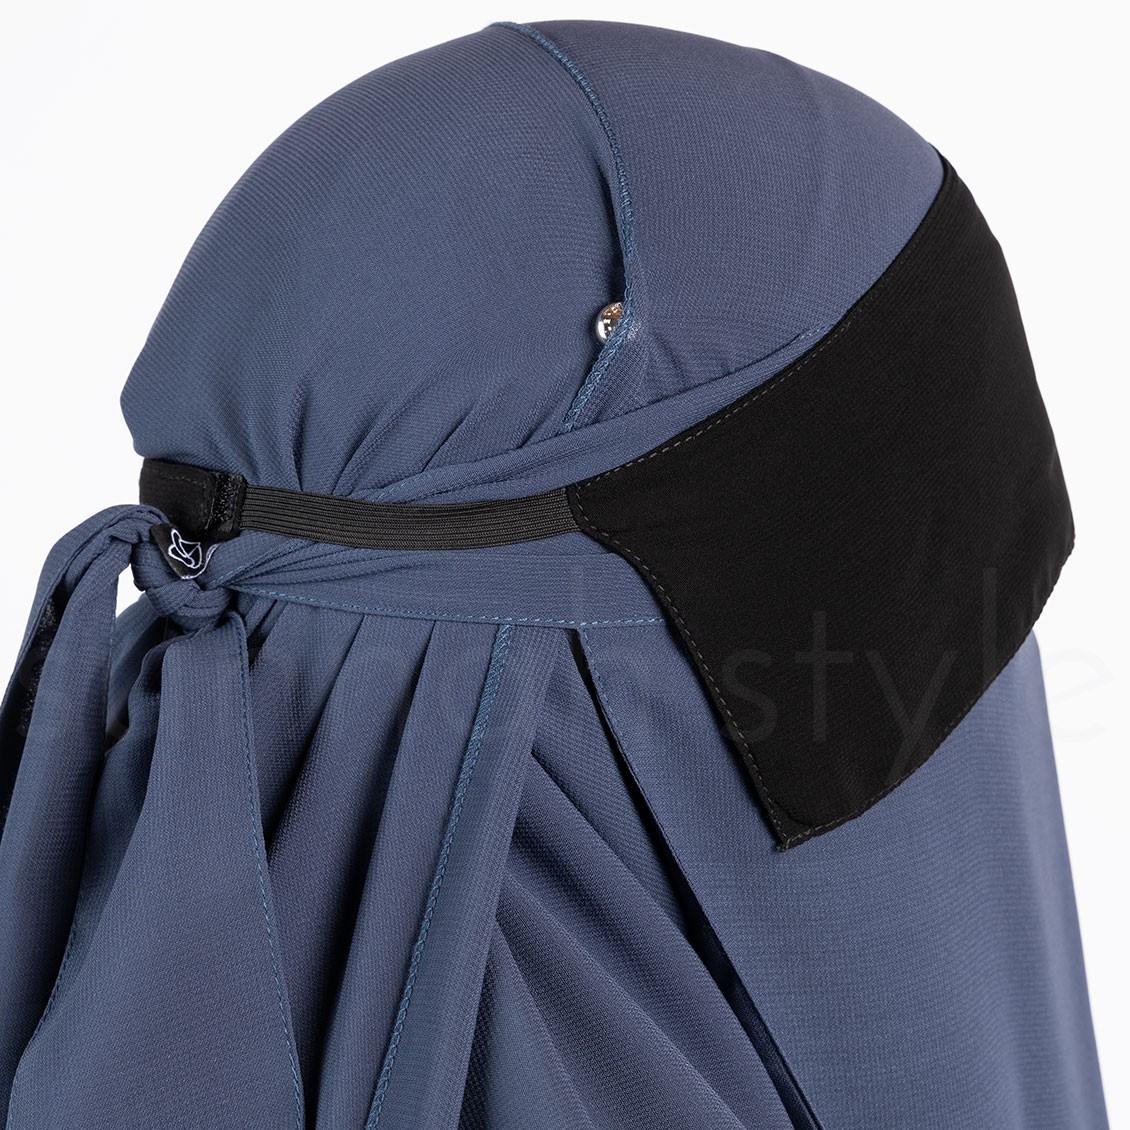 Sunnah Style Adjustable Niqab Flap Black